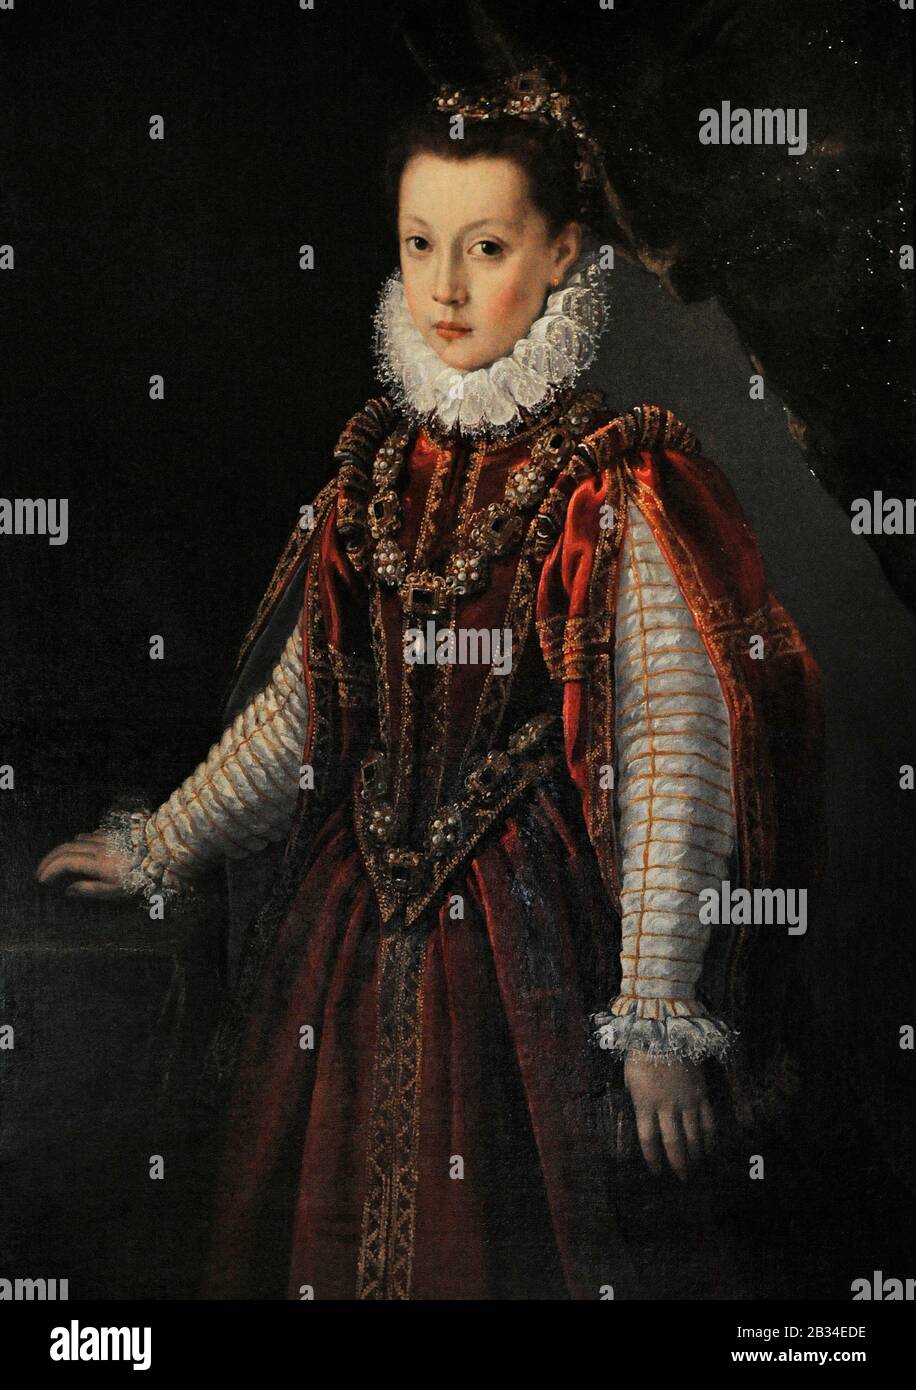 Porträt einer Jungen Dame, ca. 1560. Sofonisba Anguissola (ca. 1532-1625) zugeschrieben. Lazaro Galdiano Museum. Madrid. Spanien. Stockfoto